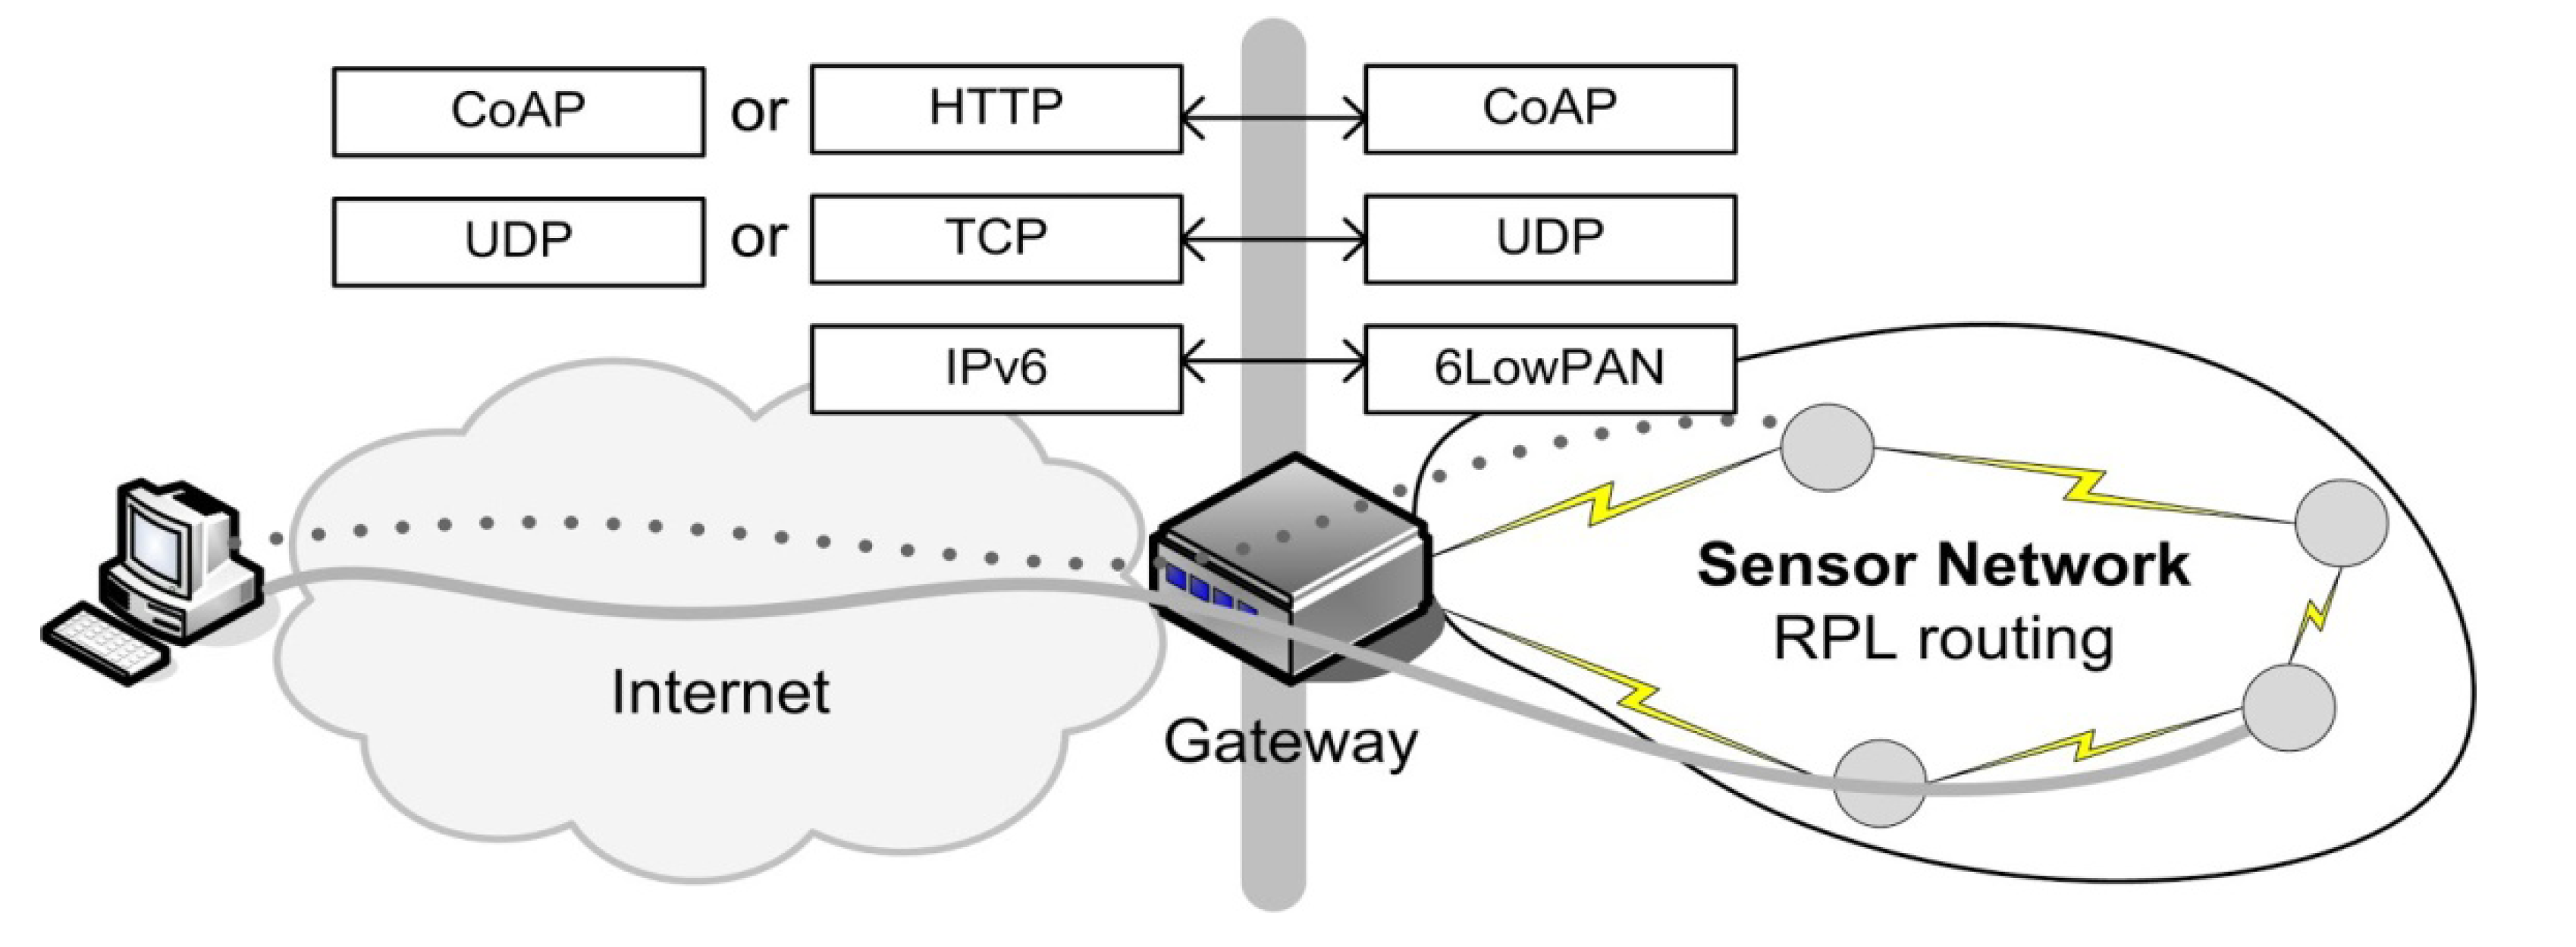 Протокол ис. Вариант сети с ipv6 и 6lowpan. Принципы технологии 6lowpan. Создание профиля IPSEC картинка. Диаграмма, которая демонстрирует, как работает протокол COAP:.